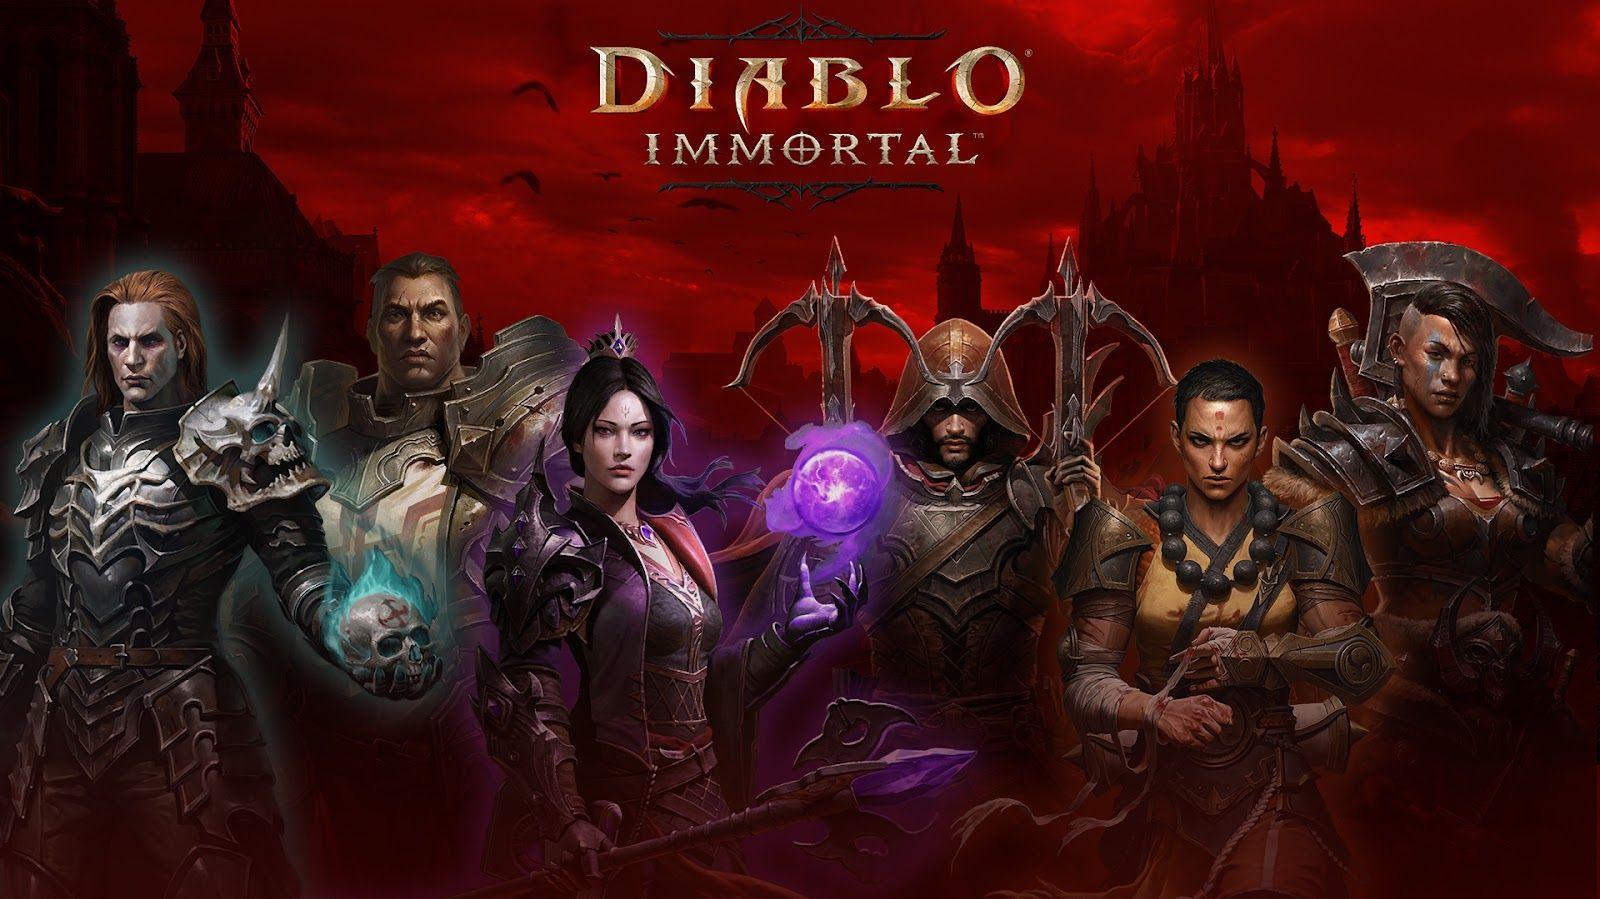 Diablo Immortal Best Legendary Gems Tier List